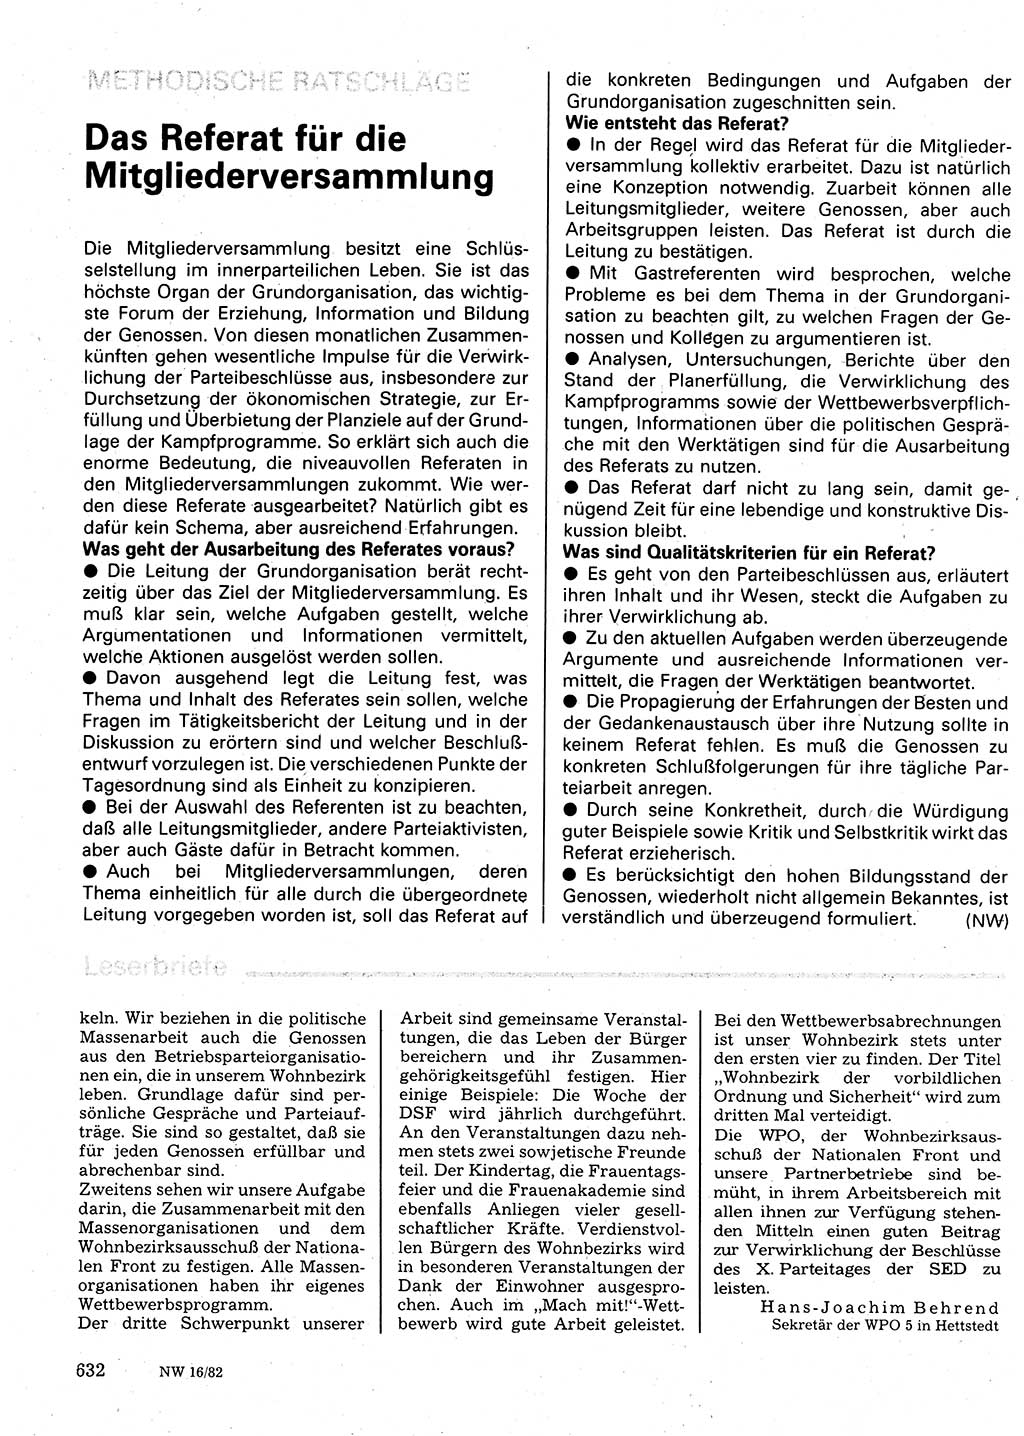 Neuer Weg (NW), Organ des Zentralkomitees (ZK) der SED (Sozialistische Einheitspartei Deutschlands) für Fragen des Parteilebens, 37. Jahrgang [Deutsche Demokratische Republik (DDR)] 1982, Seite 632 (NW ZK SED DDR 1982, S. 632)